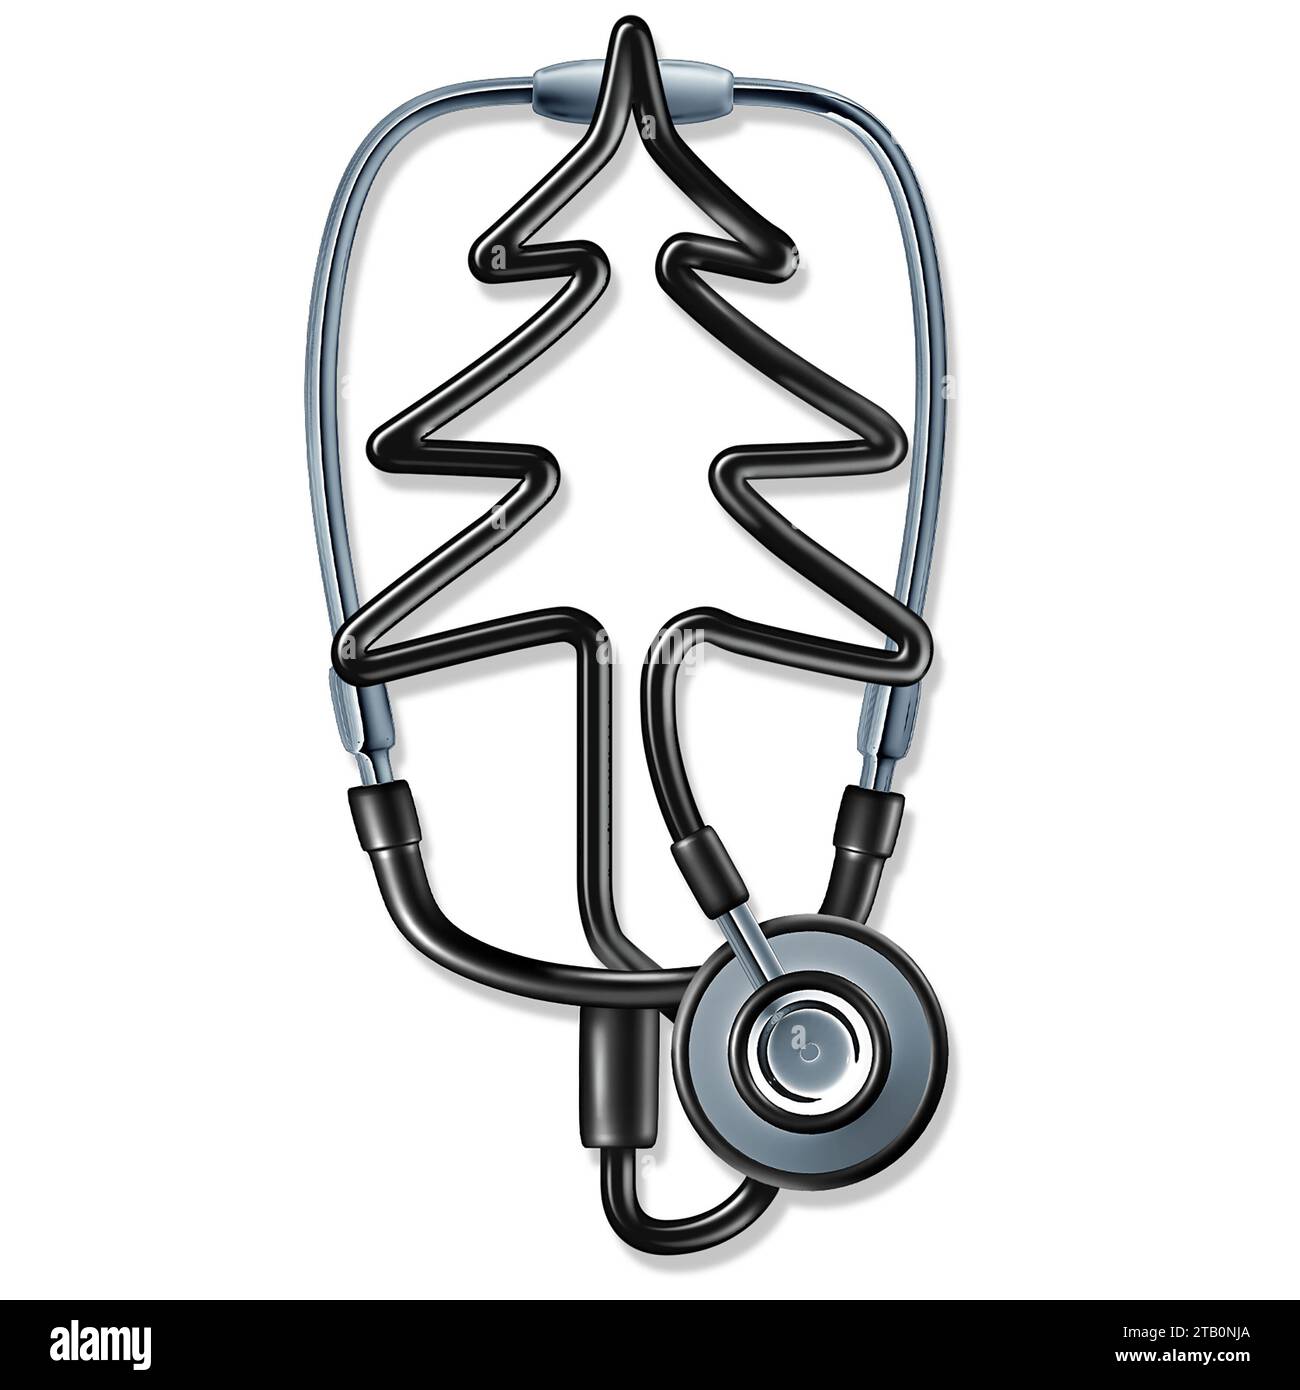 Soins de santé voeux de vacances et professionnels de la santé symbole de la saison de Noël avec un docteur ou infirmière stéthoscope formant un arbre de pin célébrant H Banque D'Images